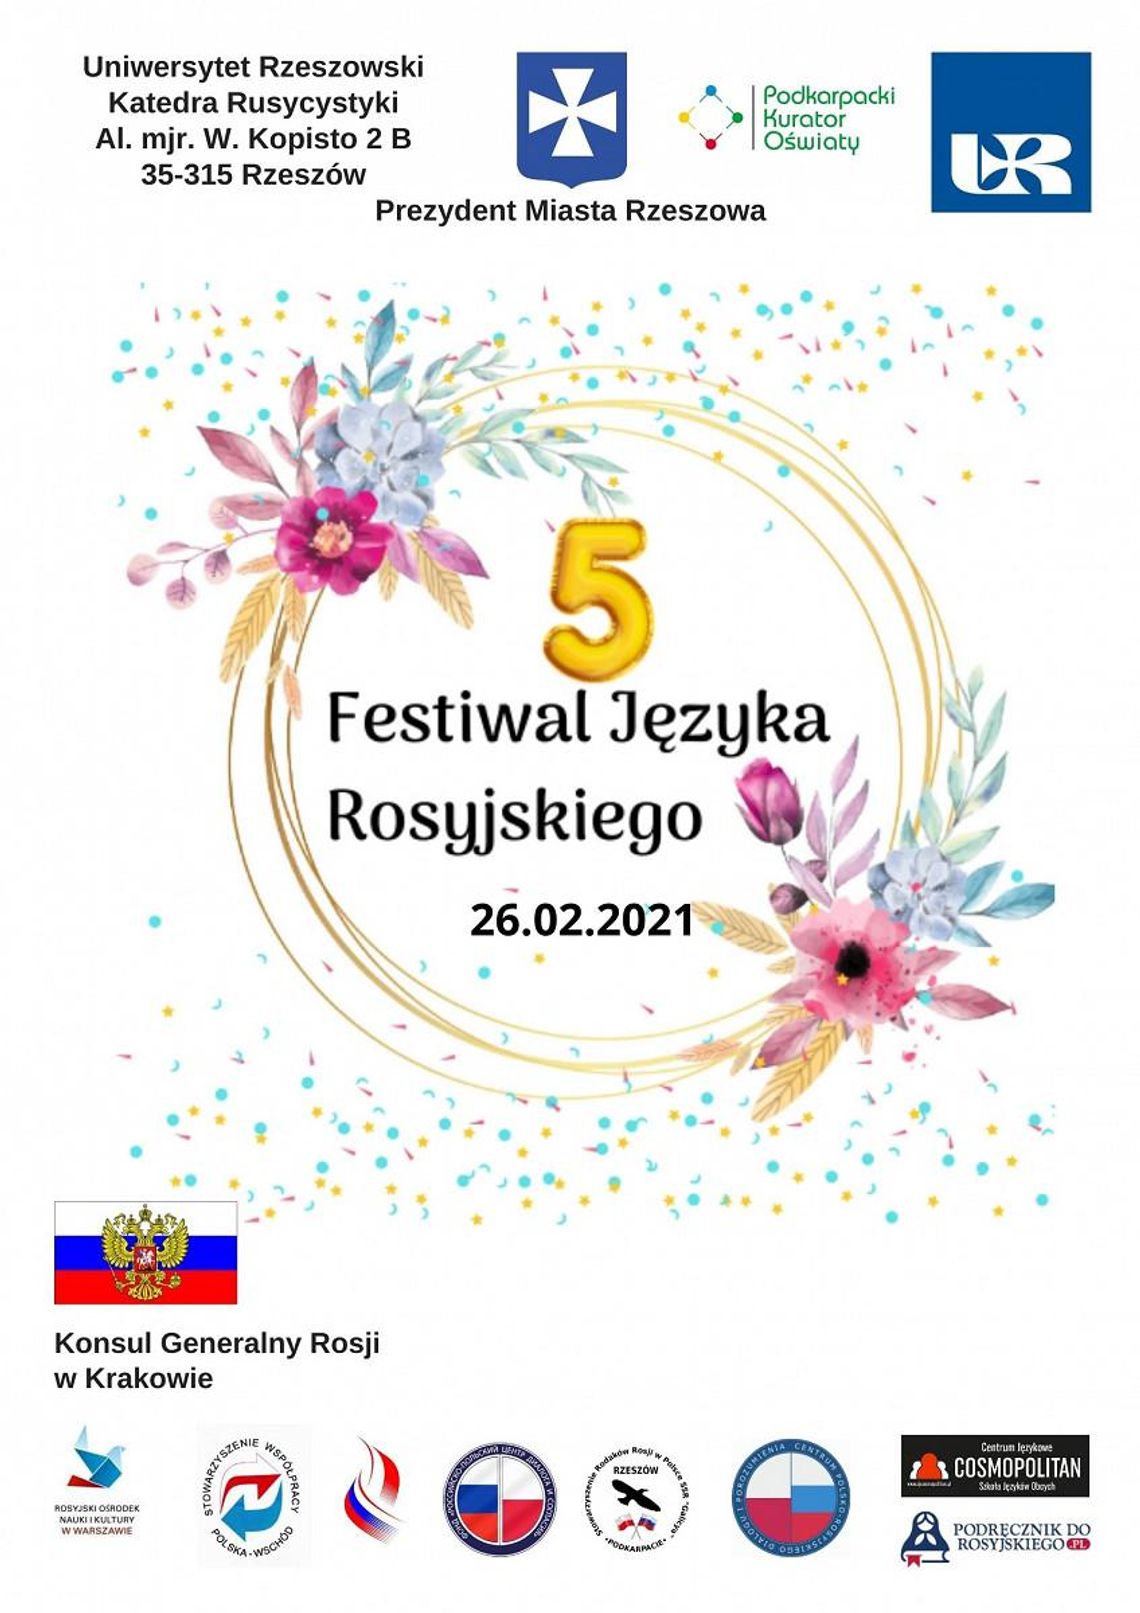 Festiwal Języka Rosyjskiego - wyniki konkursu będą umieszczone na świadectwie ukończenia szkoły